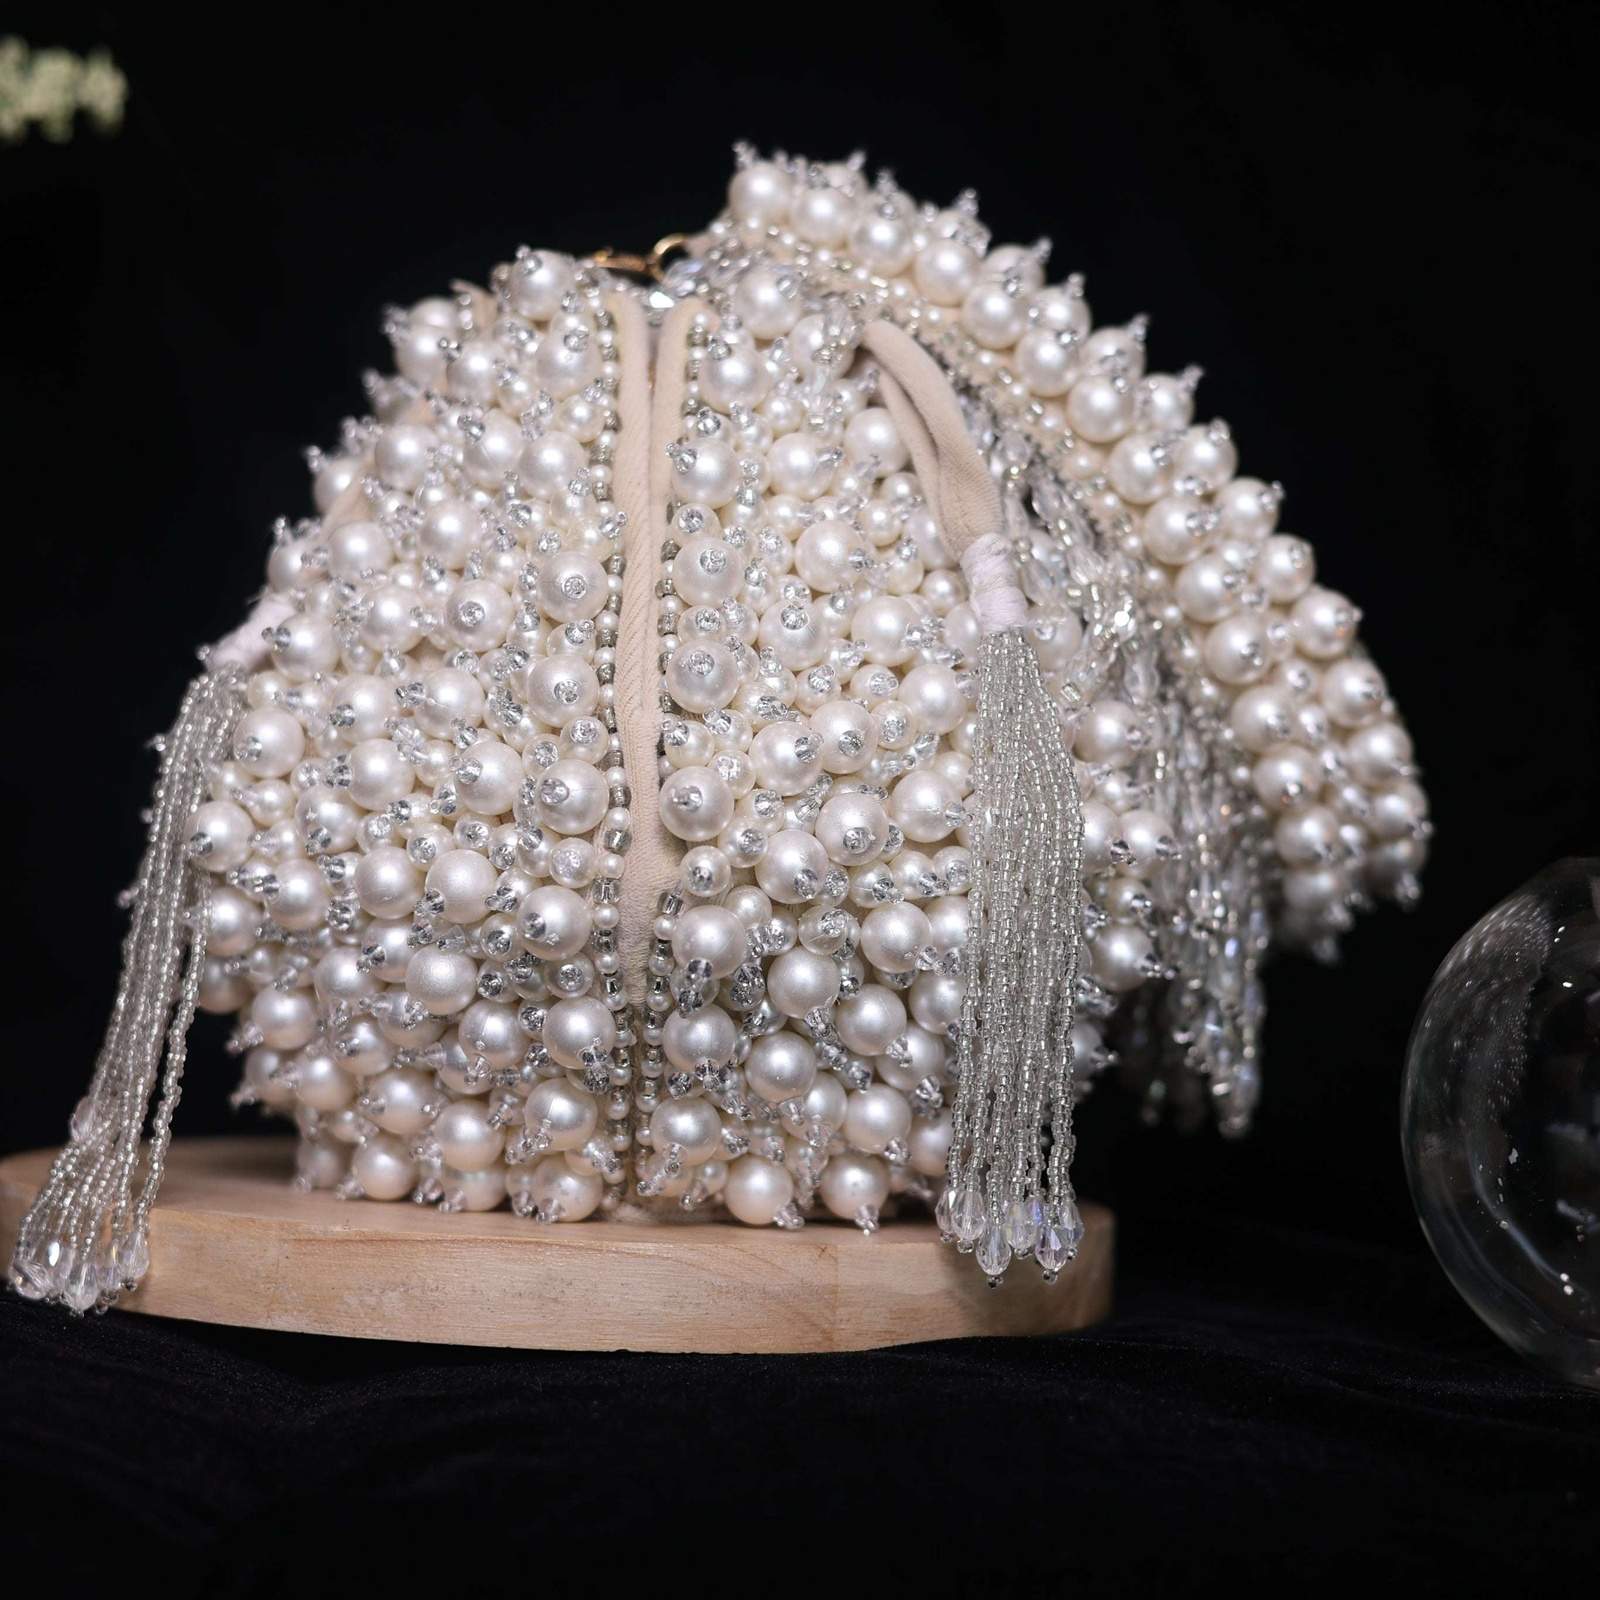 Vs Lotus pearl bag Velvet box by Shweta